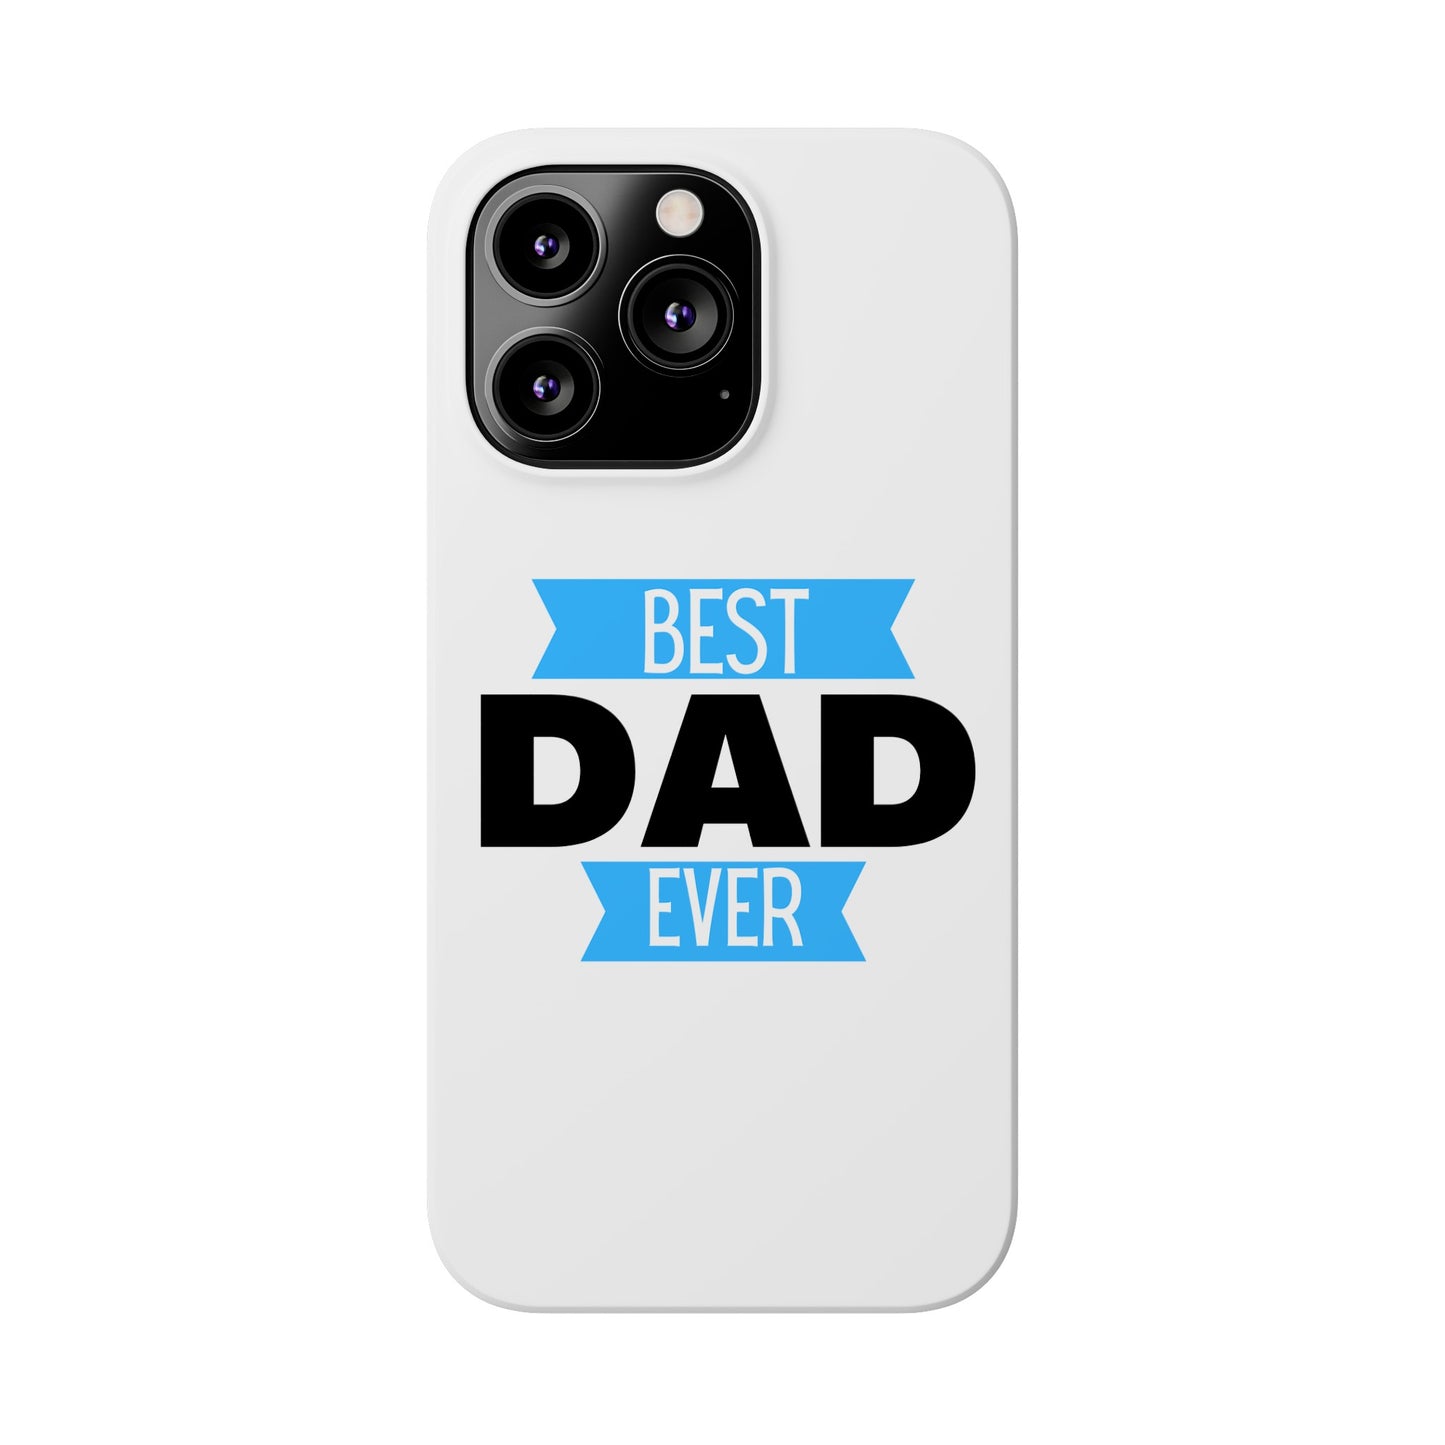 "Best Dad Ever" Slim Phone Case